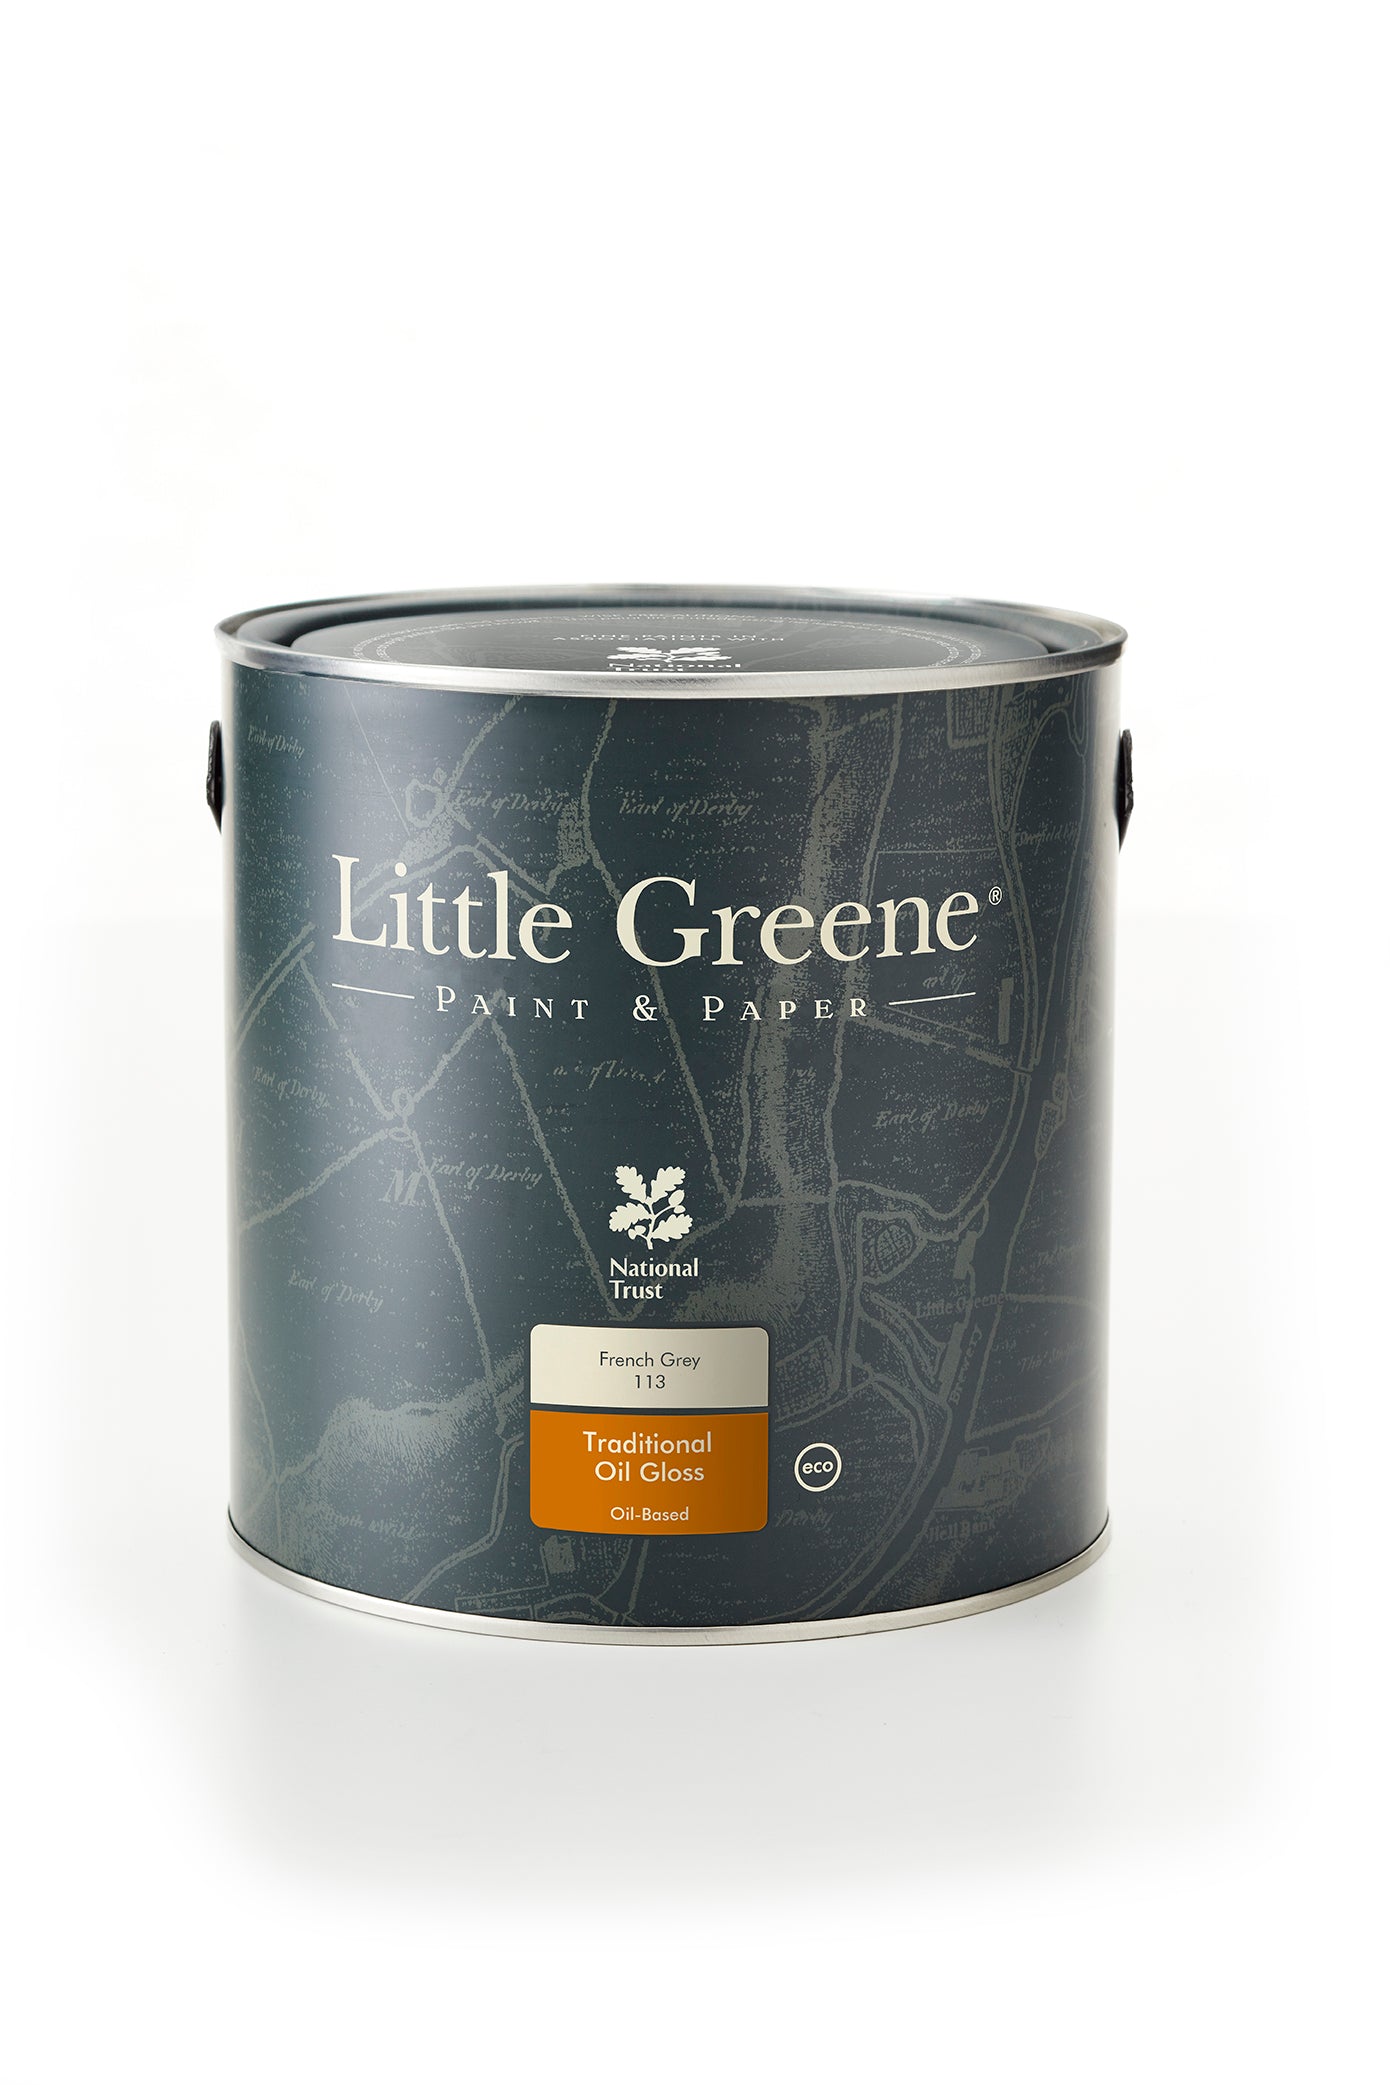 Little Greene Traditional Oil Gloss